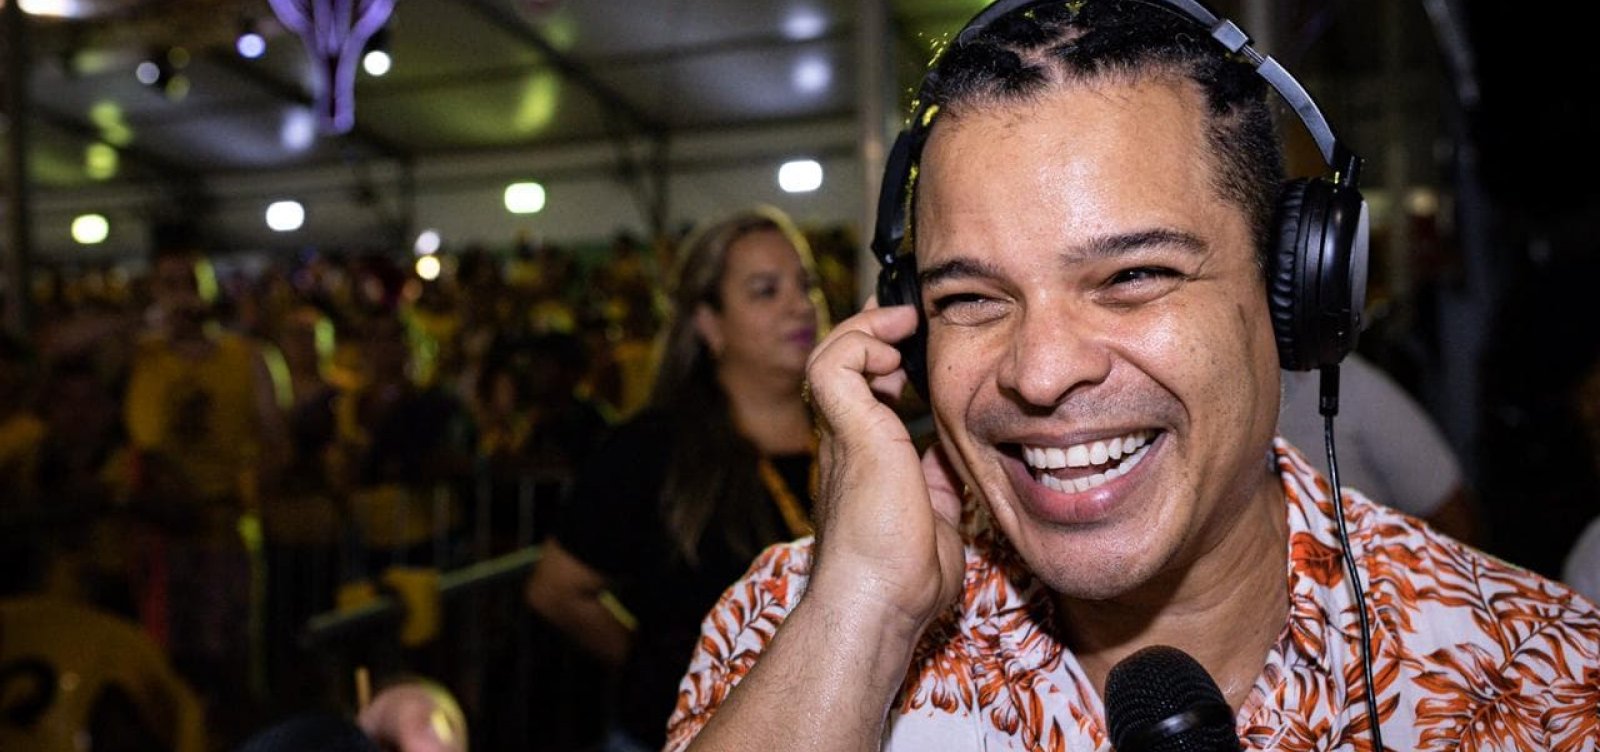 Adelmo Casé elogia carnaval de rua e projeta: 'Ano que vem estarei com minha pipoquinha'